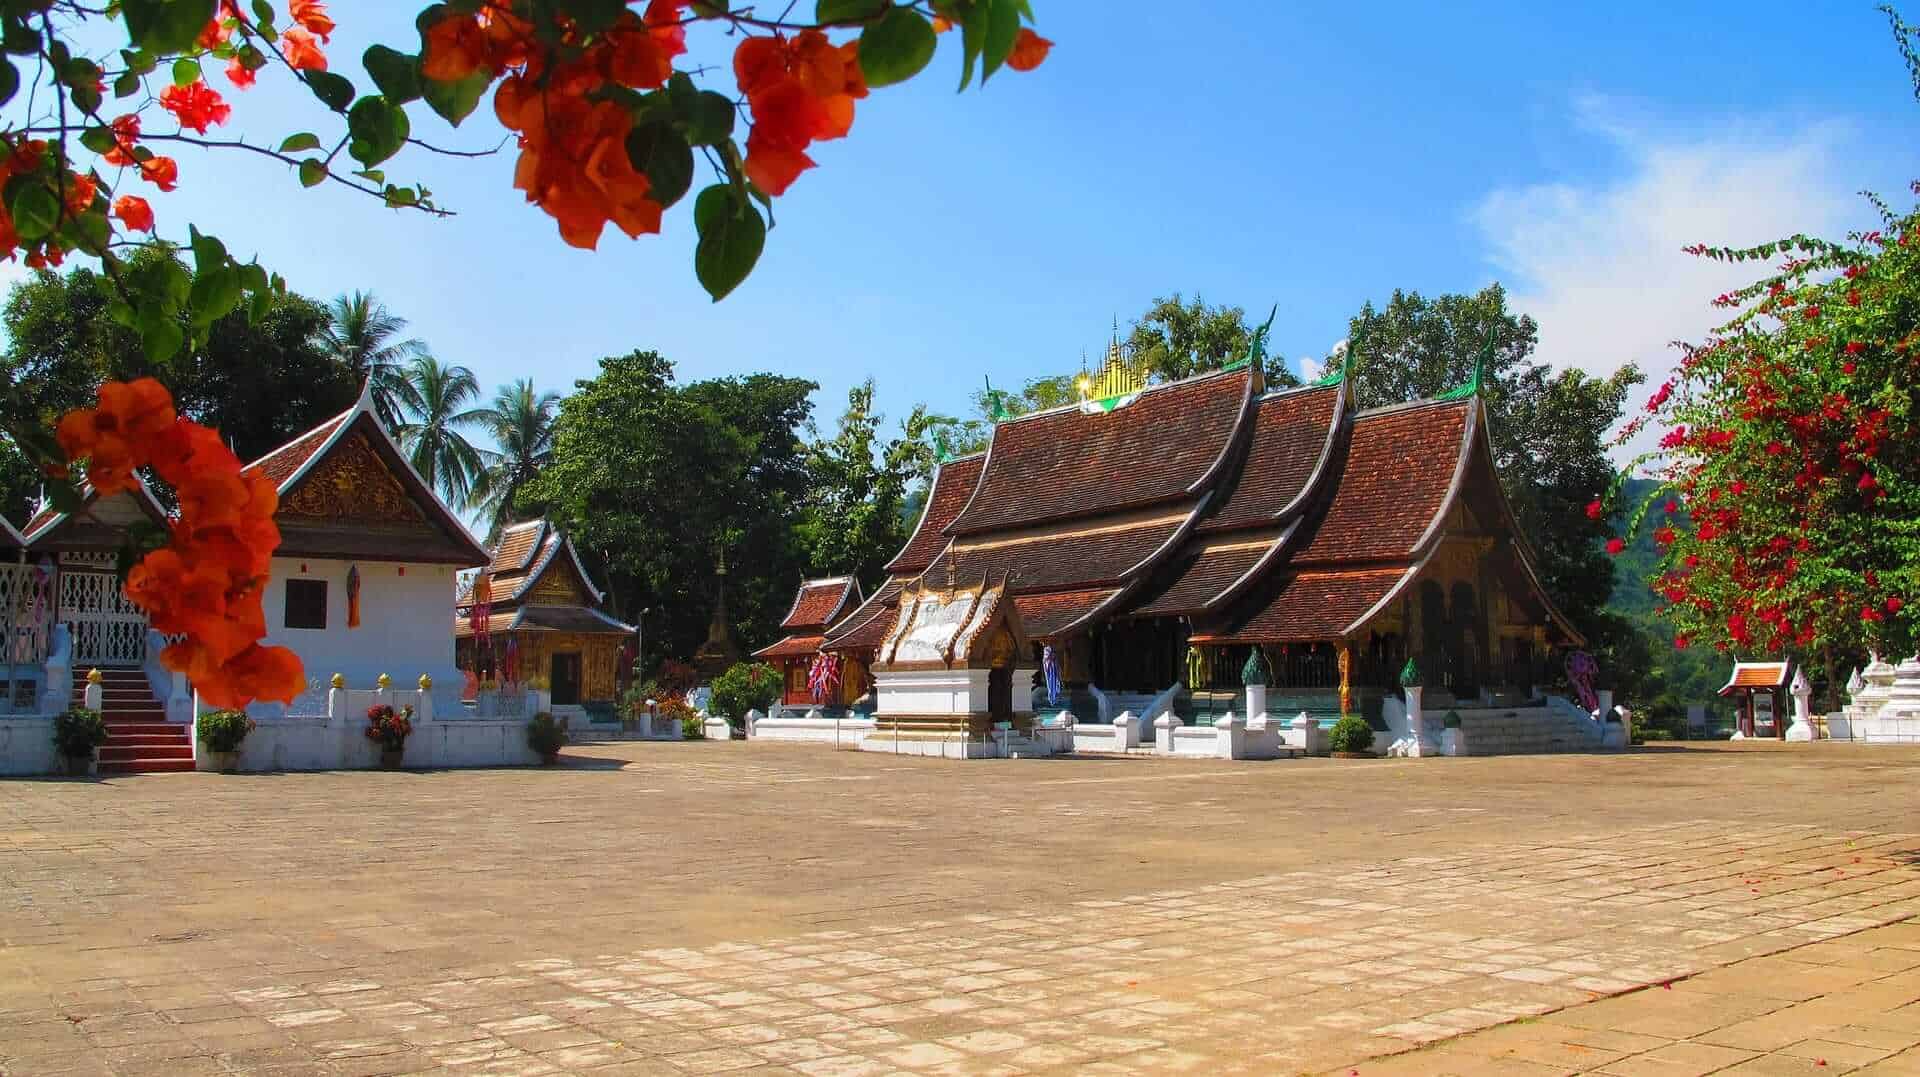 Wat Xieng Thong Temple, Luang Prabang, Laos